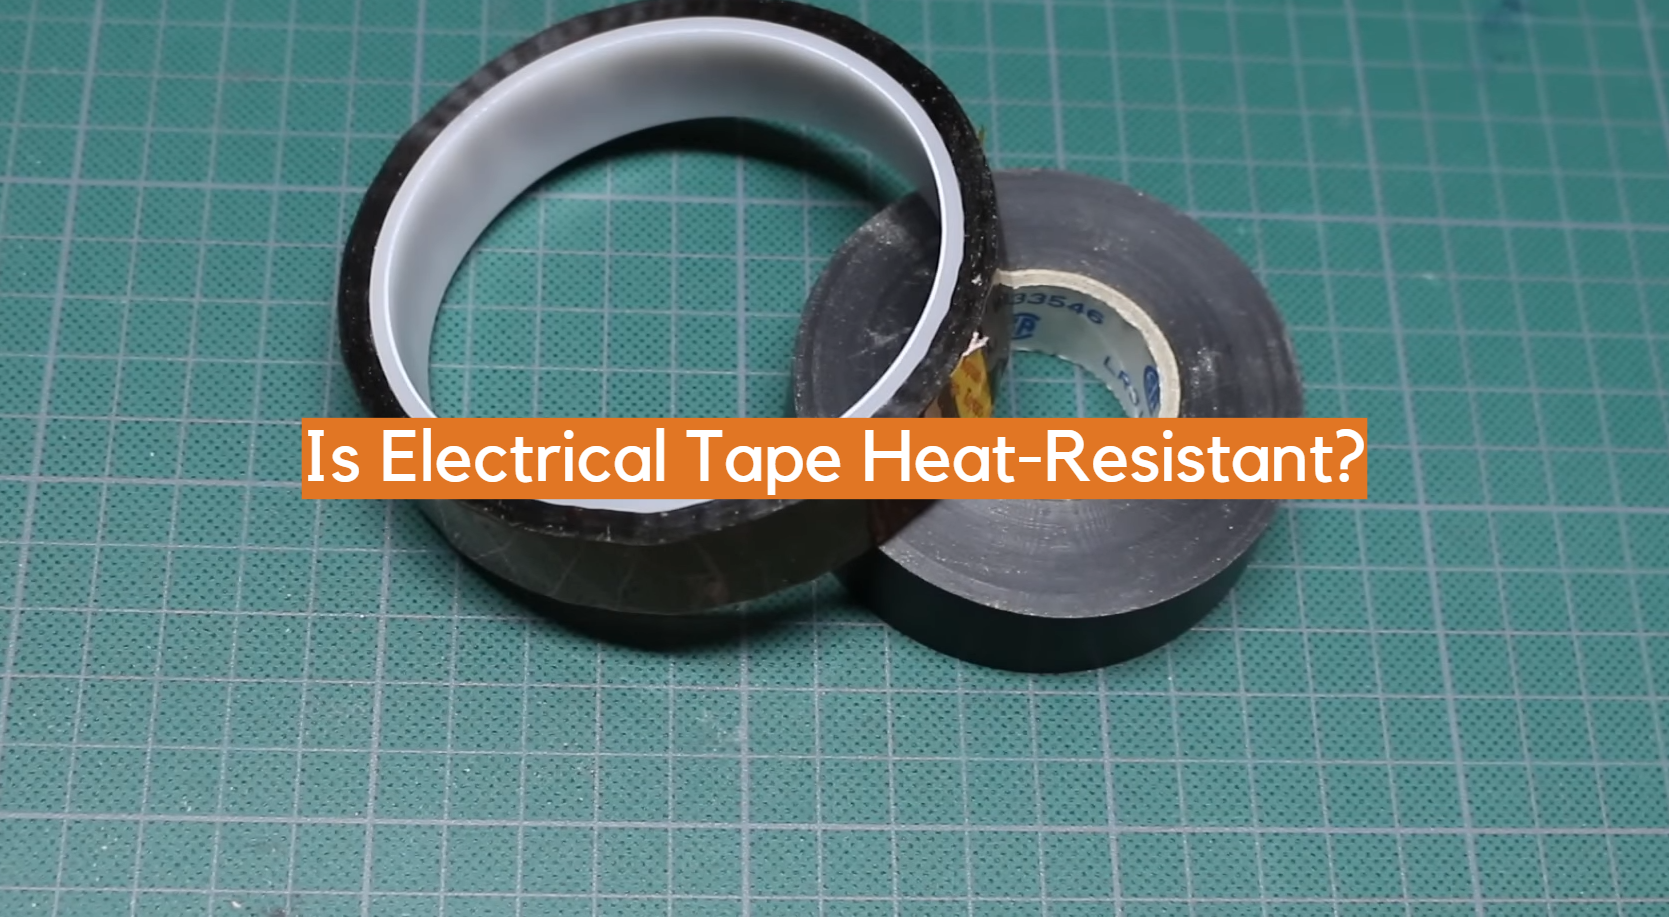 ¿Es la cinta aislante resistente al calor?